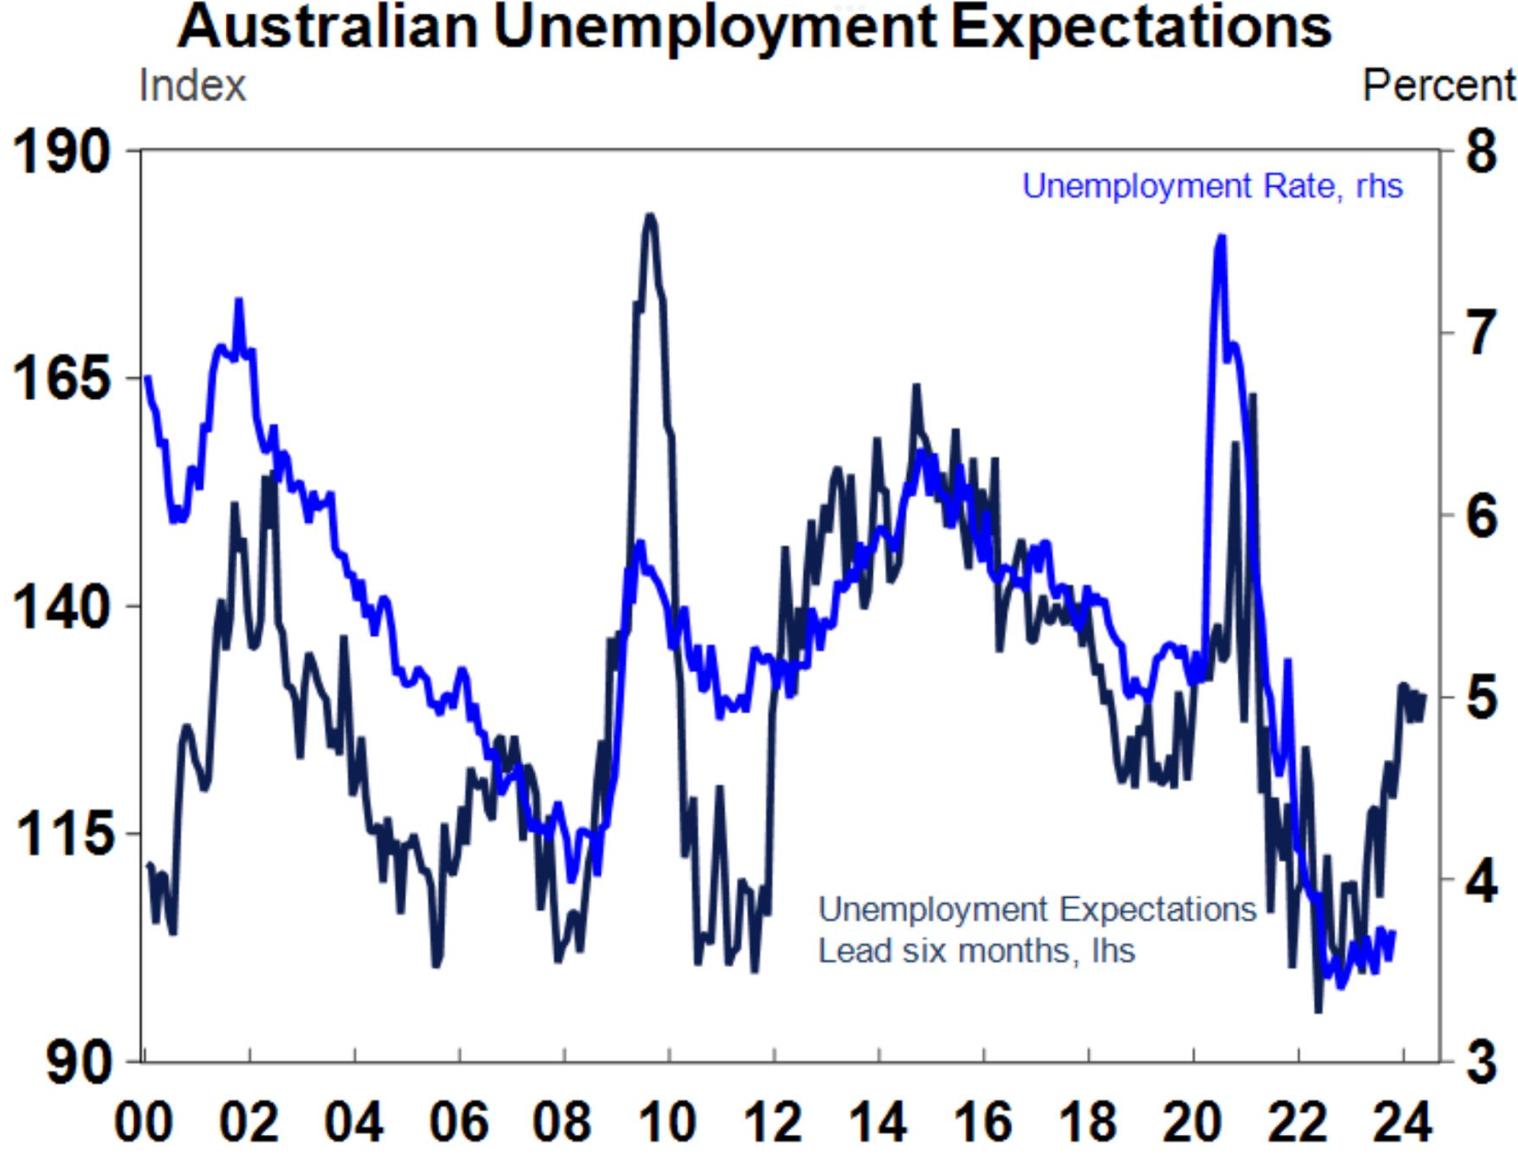 Unemployment expectations